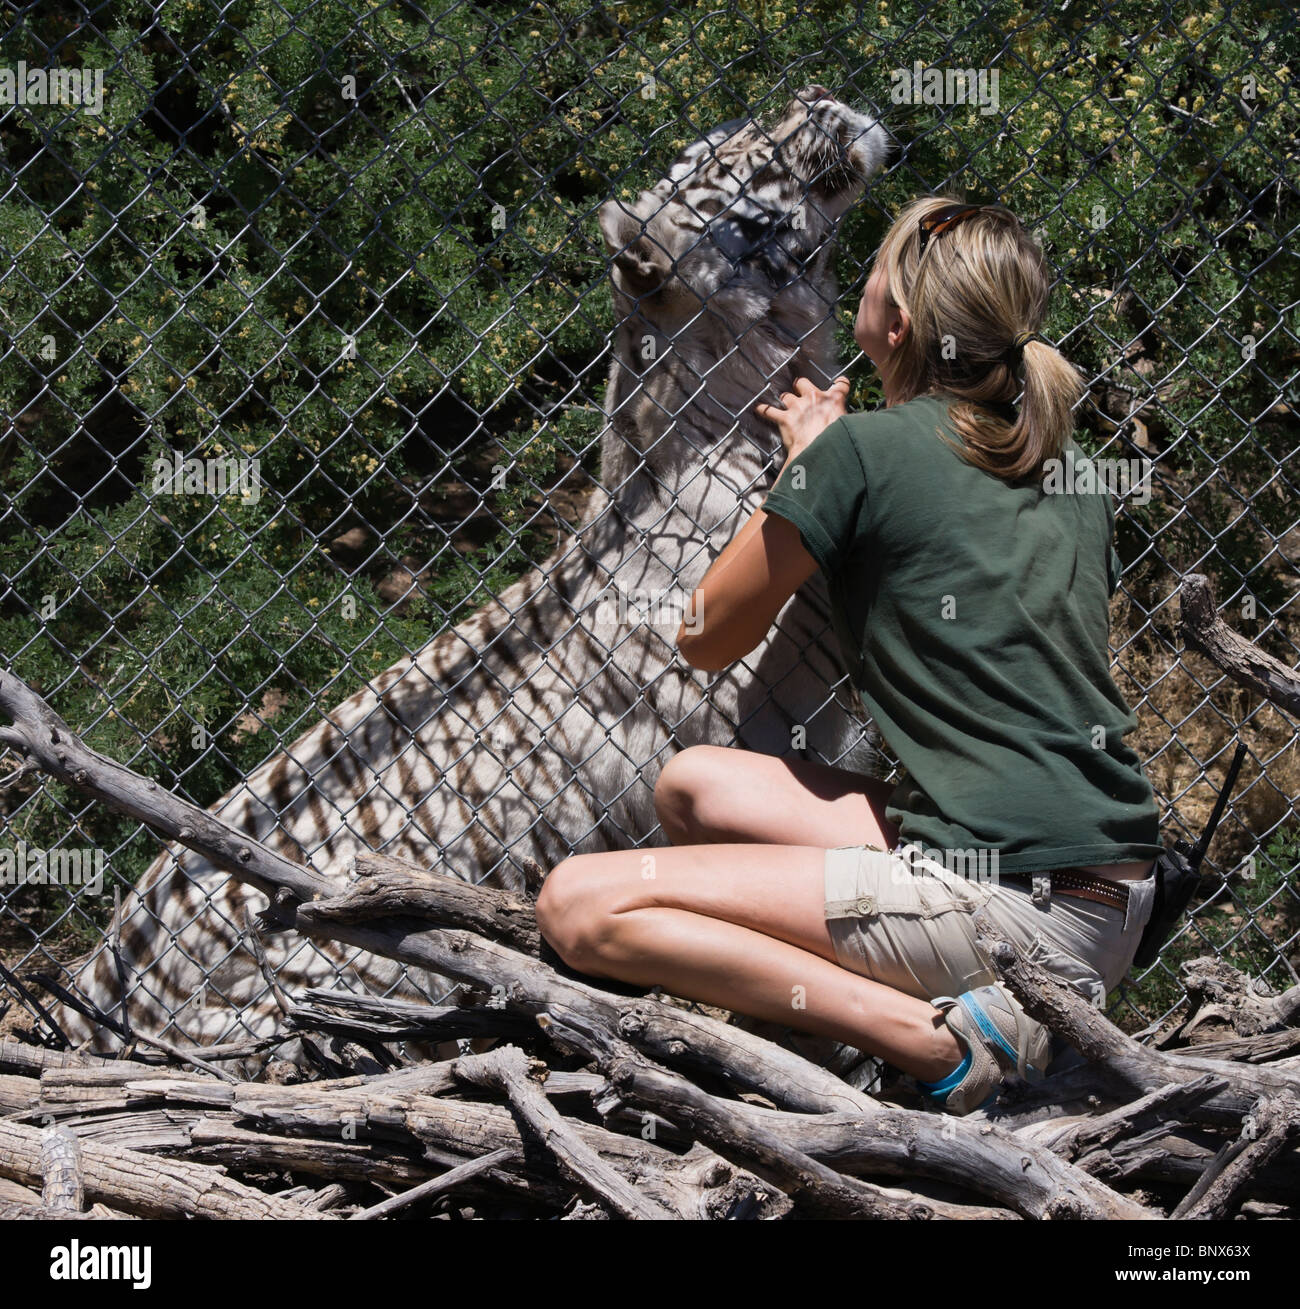 Aus Afrika Wildlife Safari Zoo Park. Weißer Tiger und weibliche Zookeeper - Freunde durch den Draht. Stockfoto